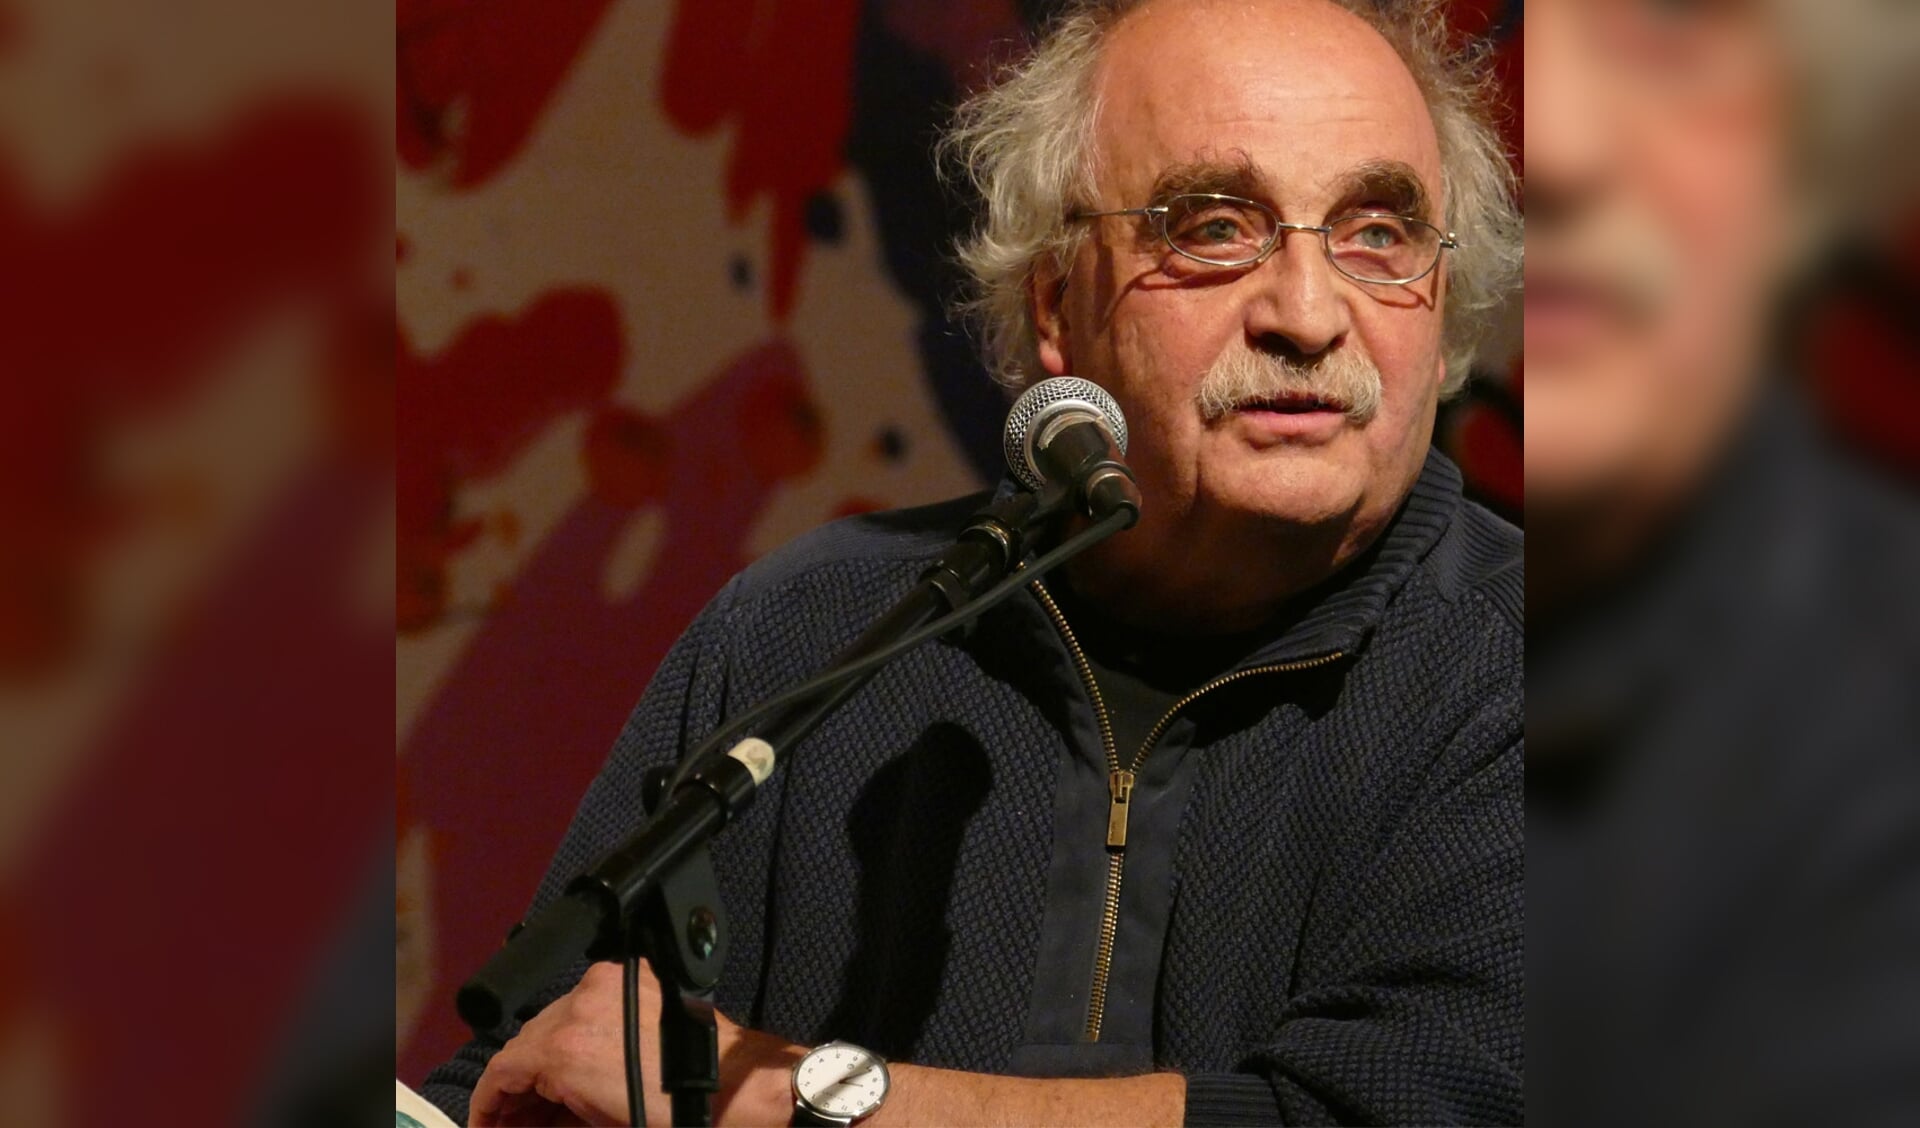 Arjeh Kalmann